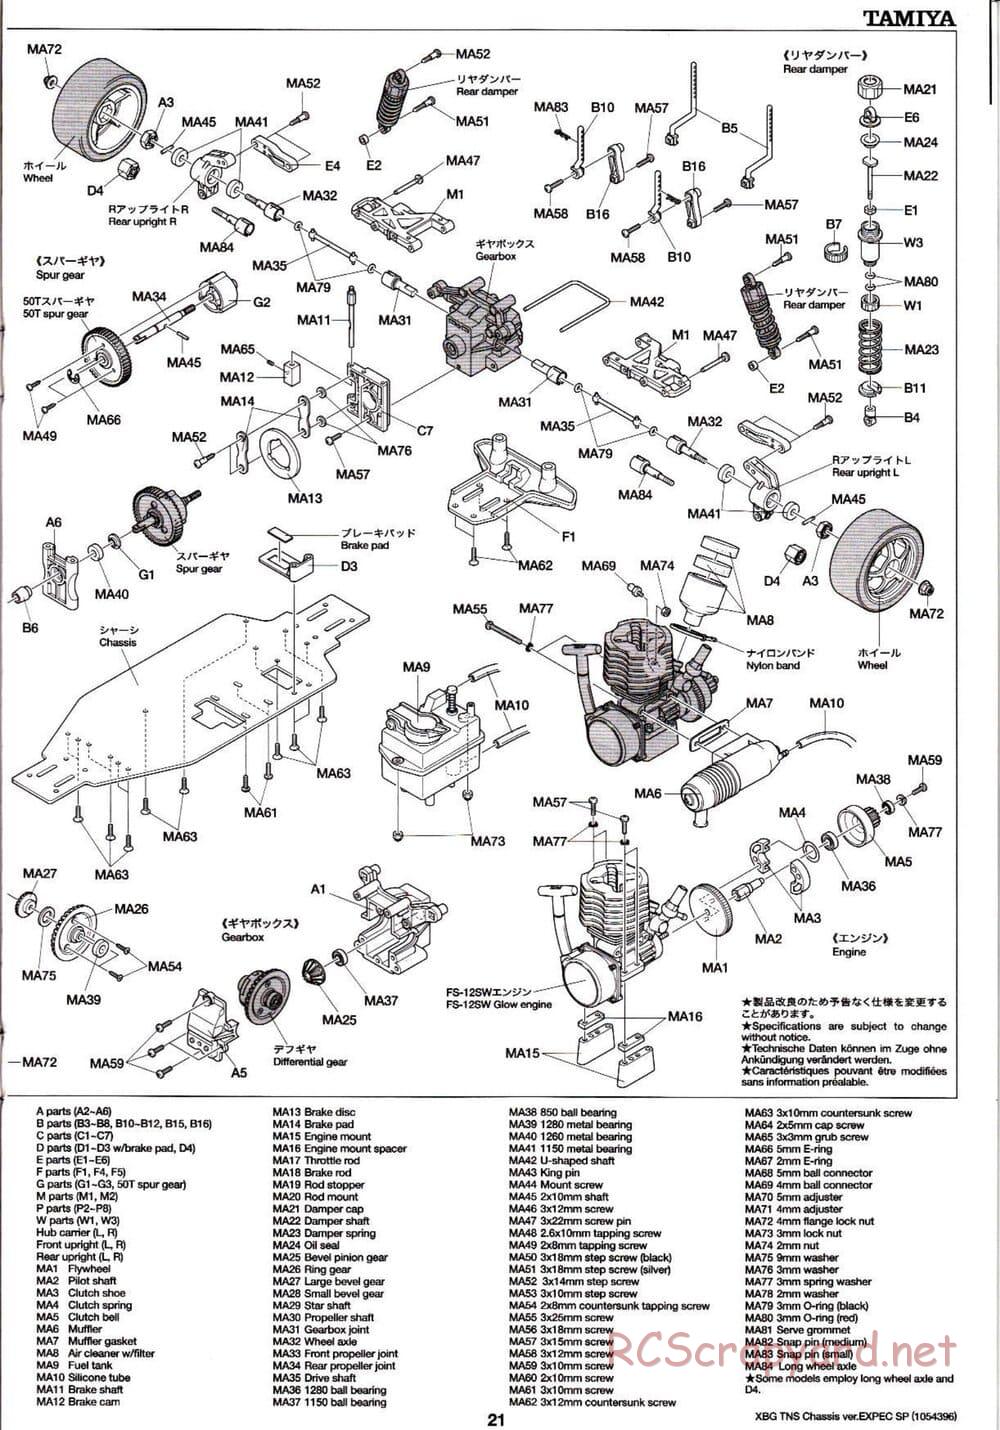 Tamiya - TNS Chassis - Manual - Page 21